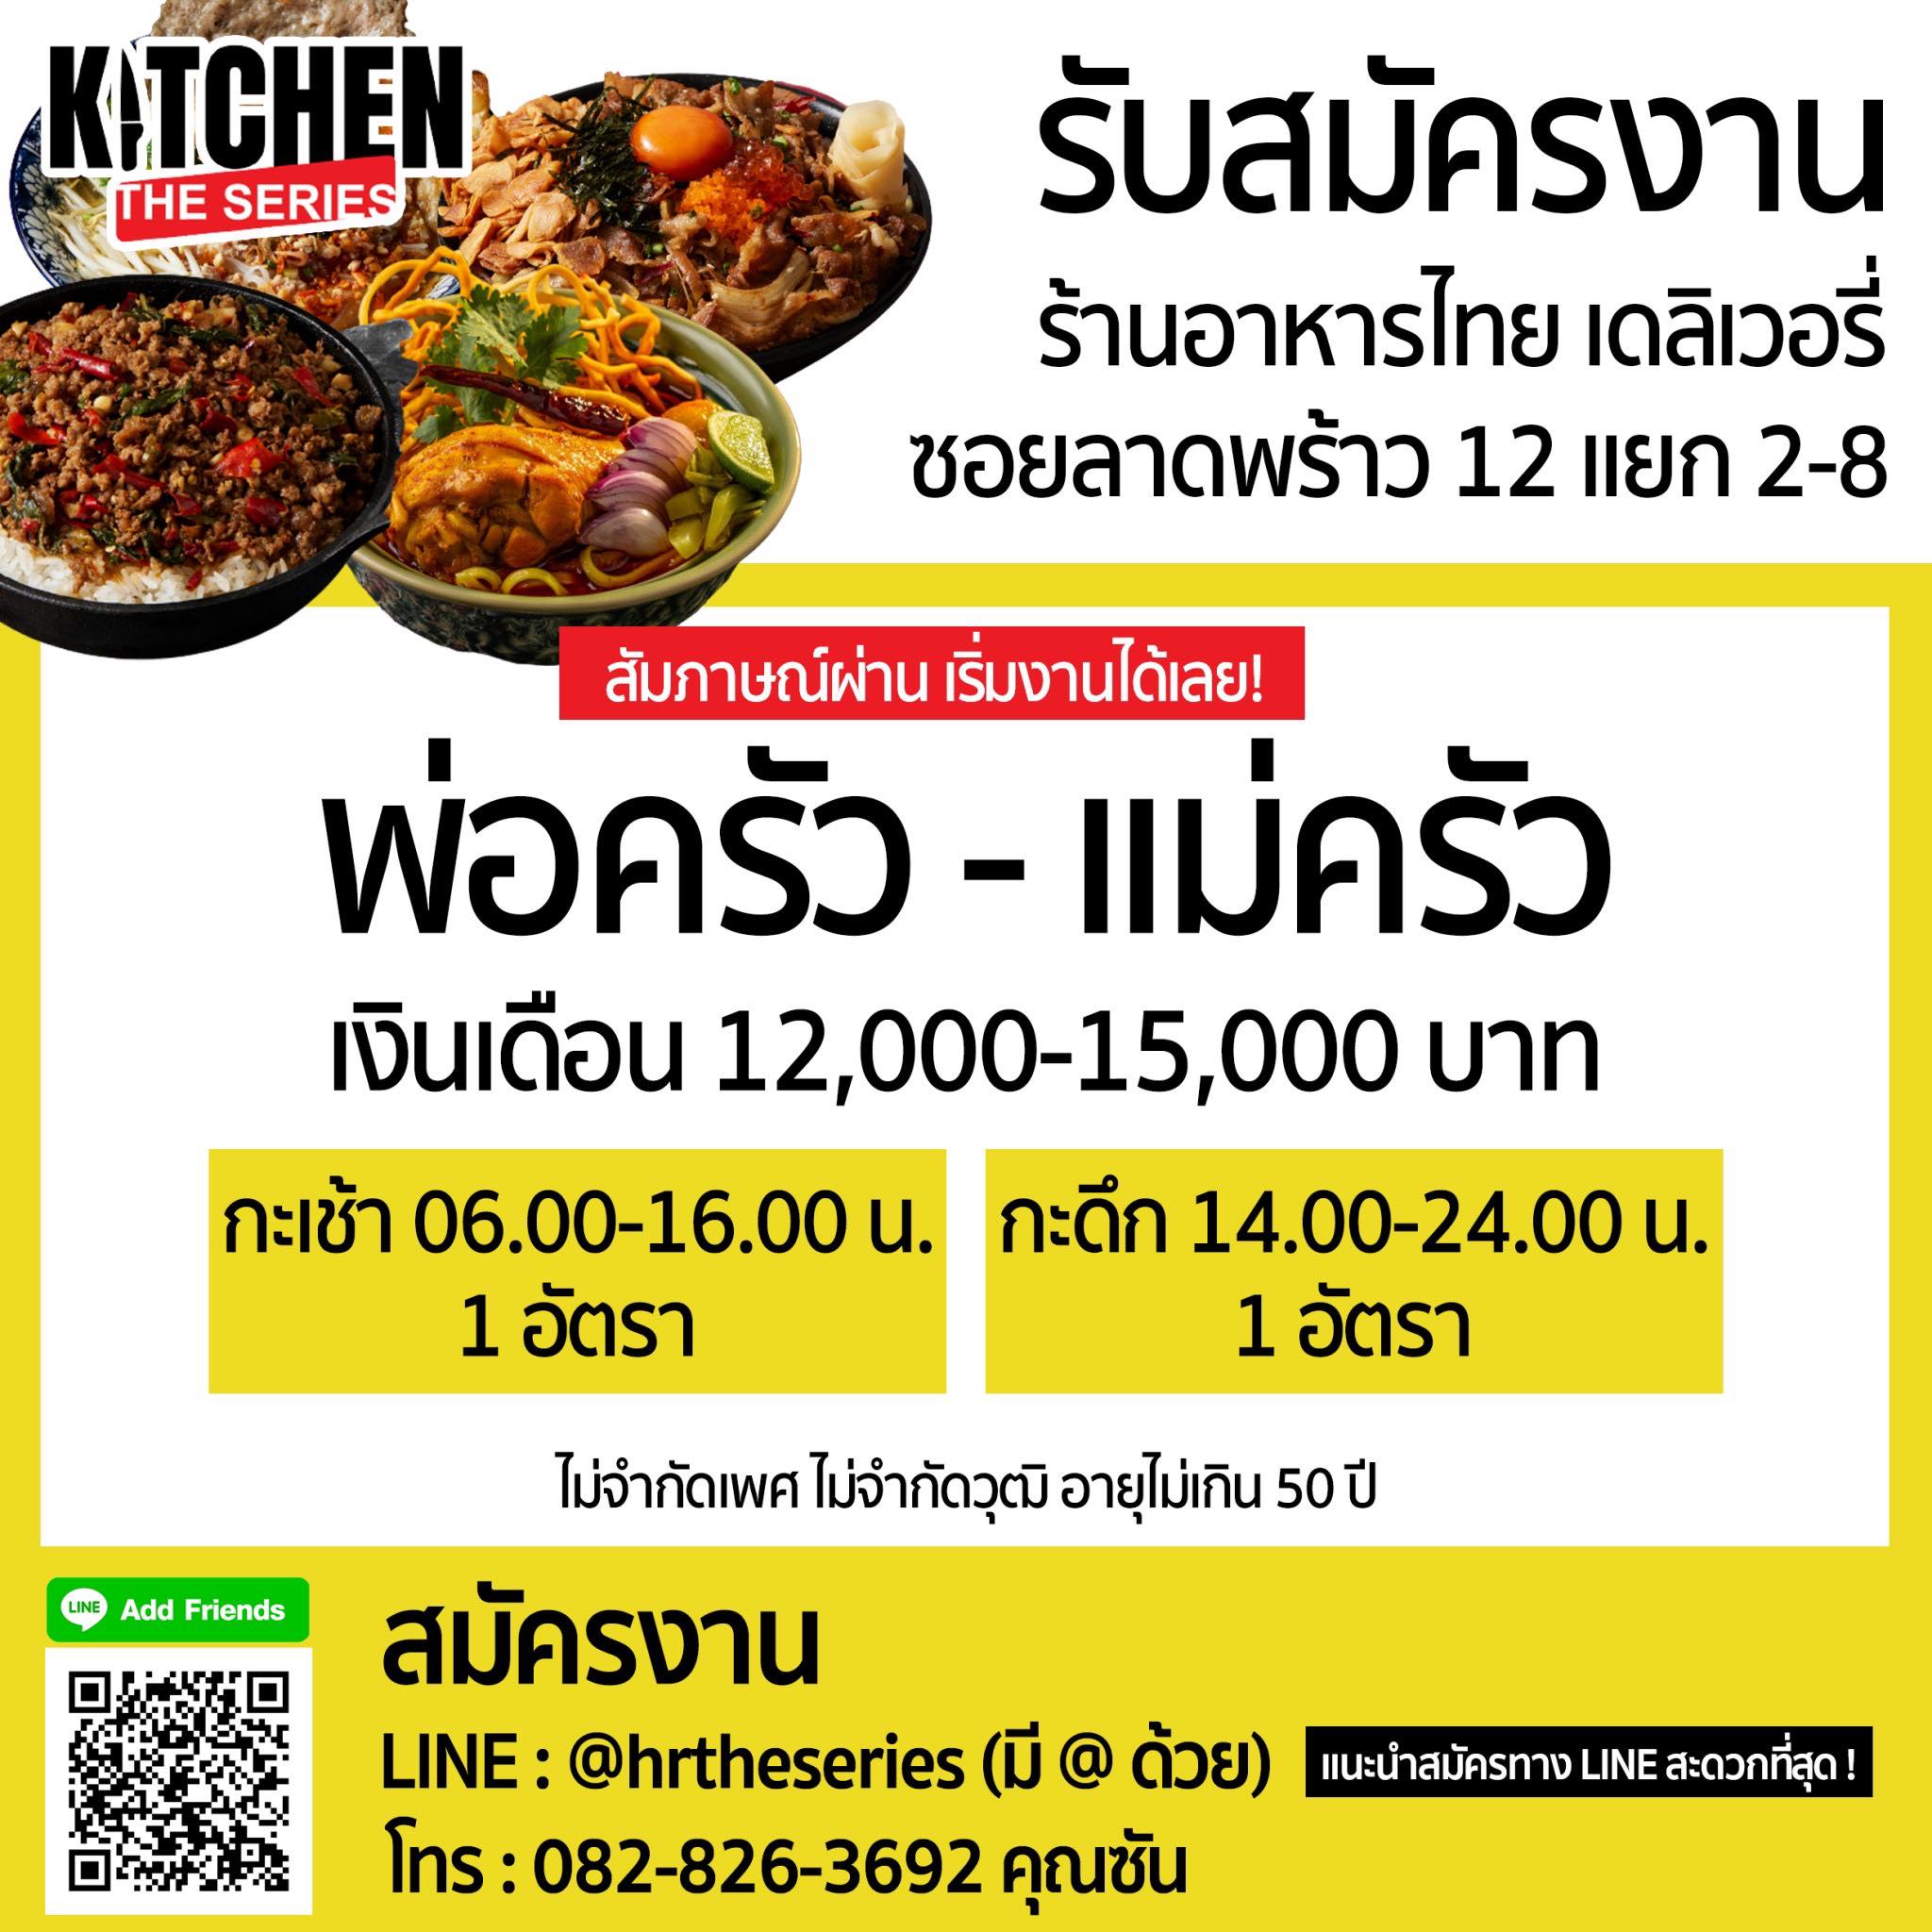 รับสมัครพ่อครัว-แม่ครัว / แคชเชียร์ ร้านอาหารไทย